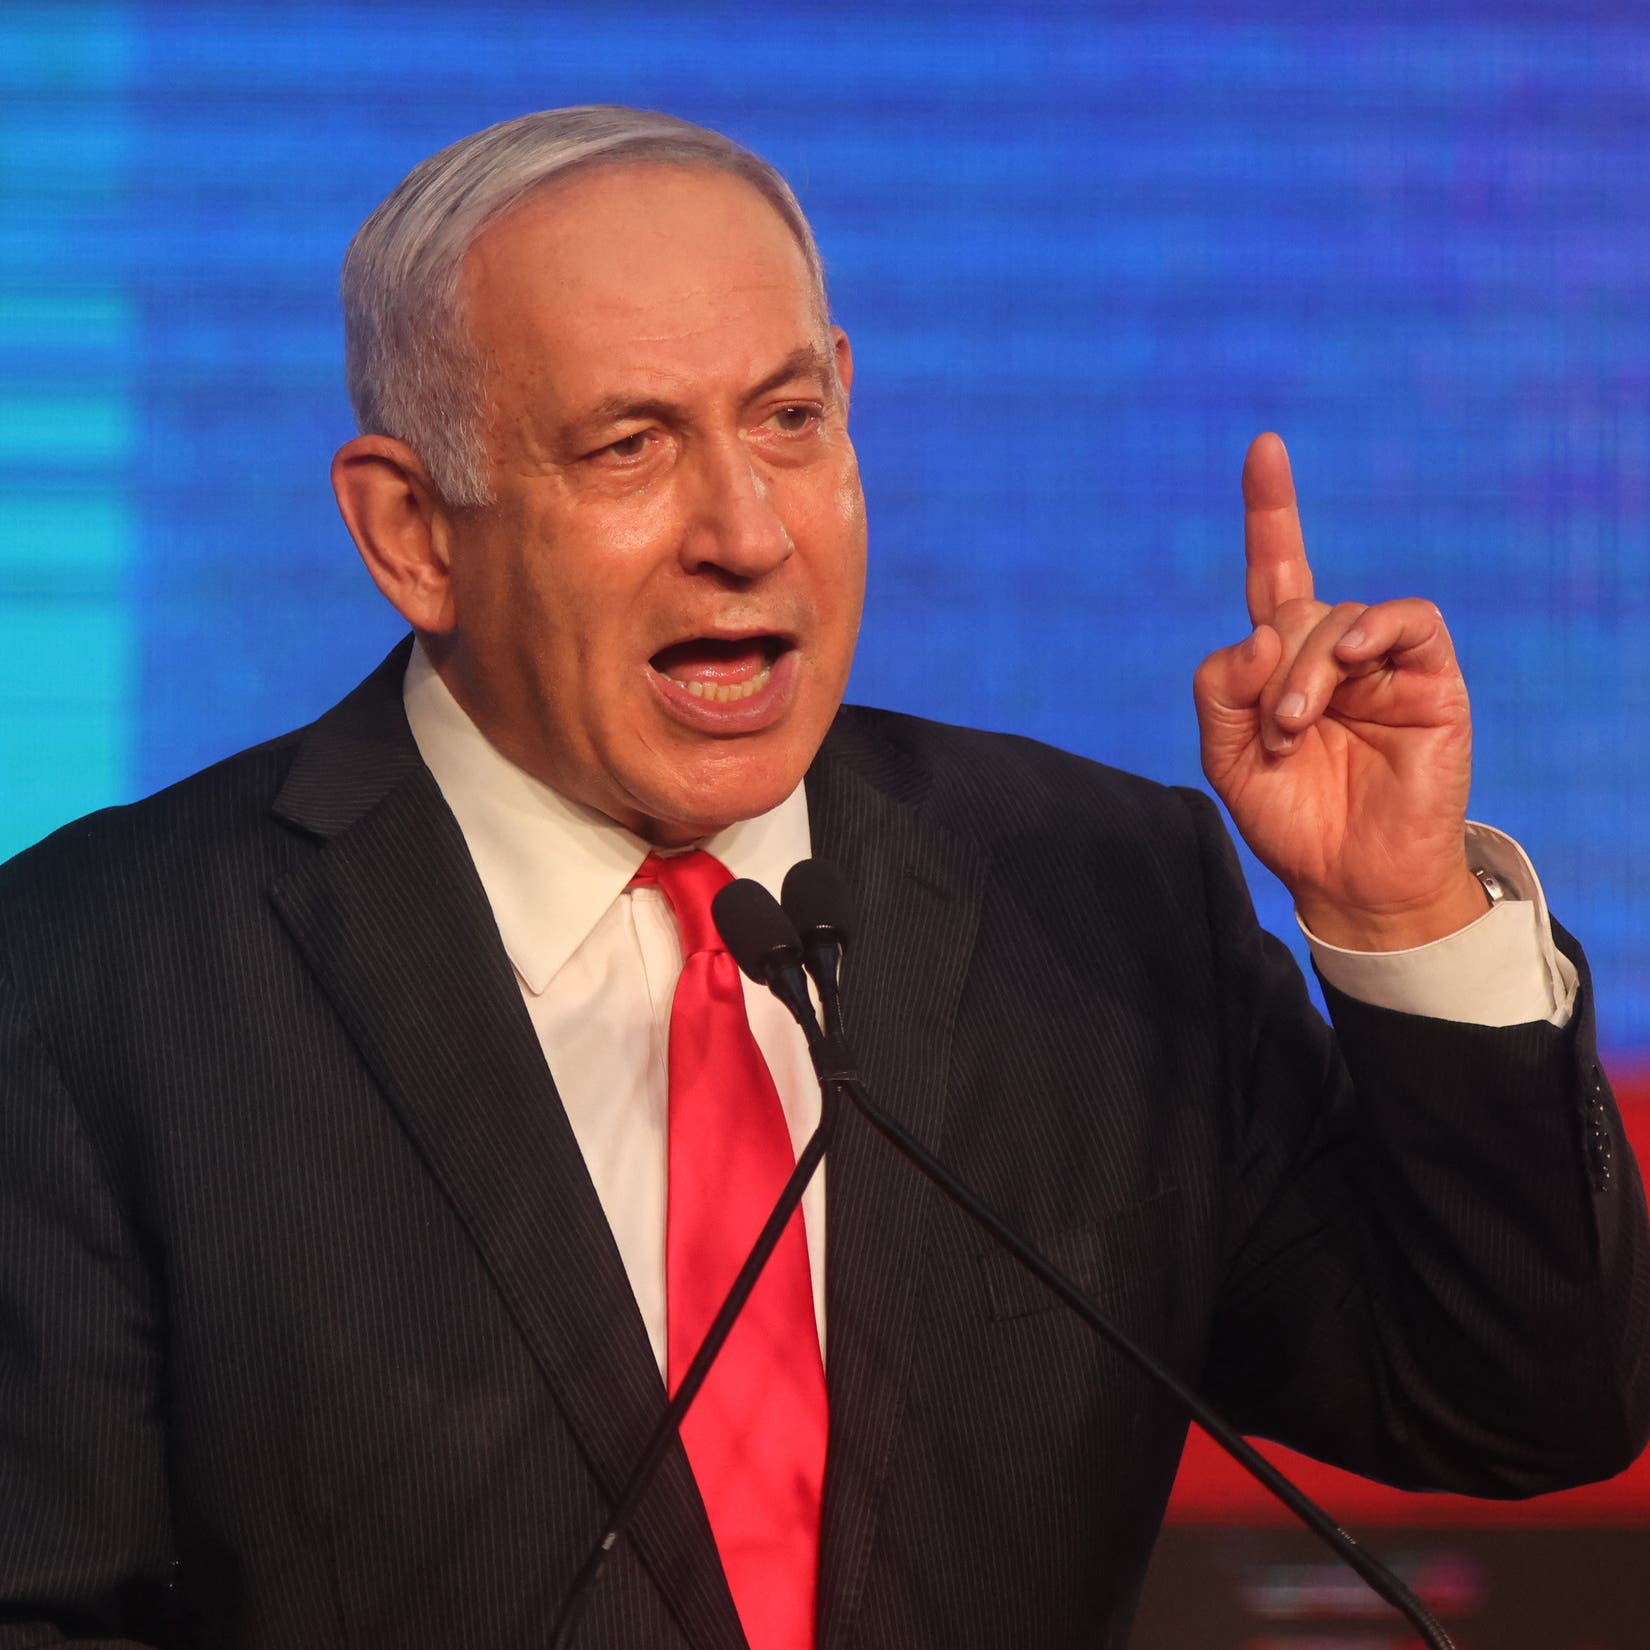 رغم توجيهات نتنياهو.. وزير التعليم الإسرائيلي عن الخلاف مع واشنطن: لن تملي أوامرها 